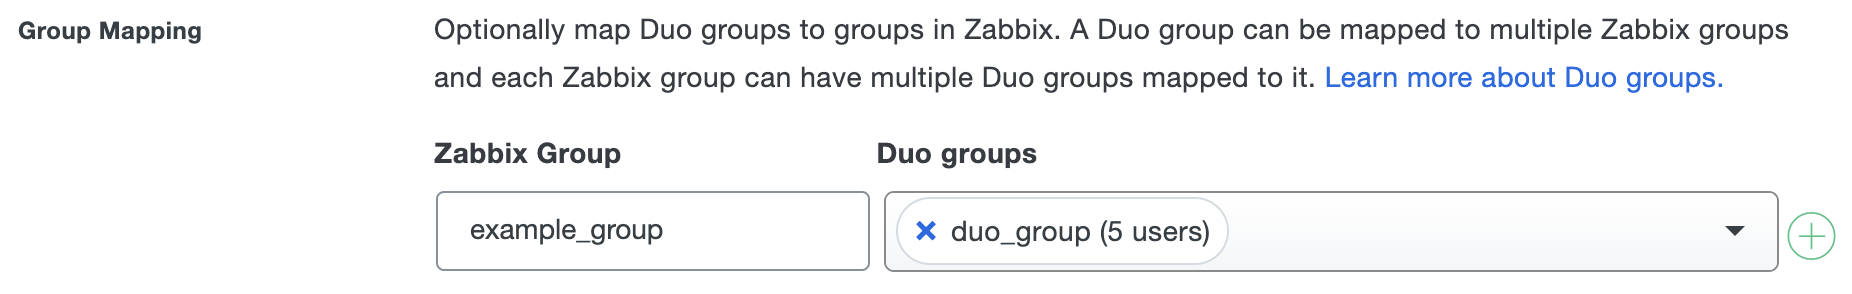 Duo Zabbix Group Mapping